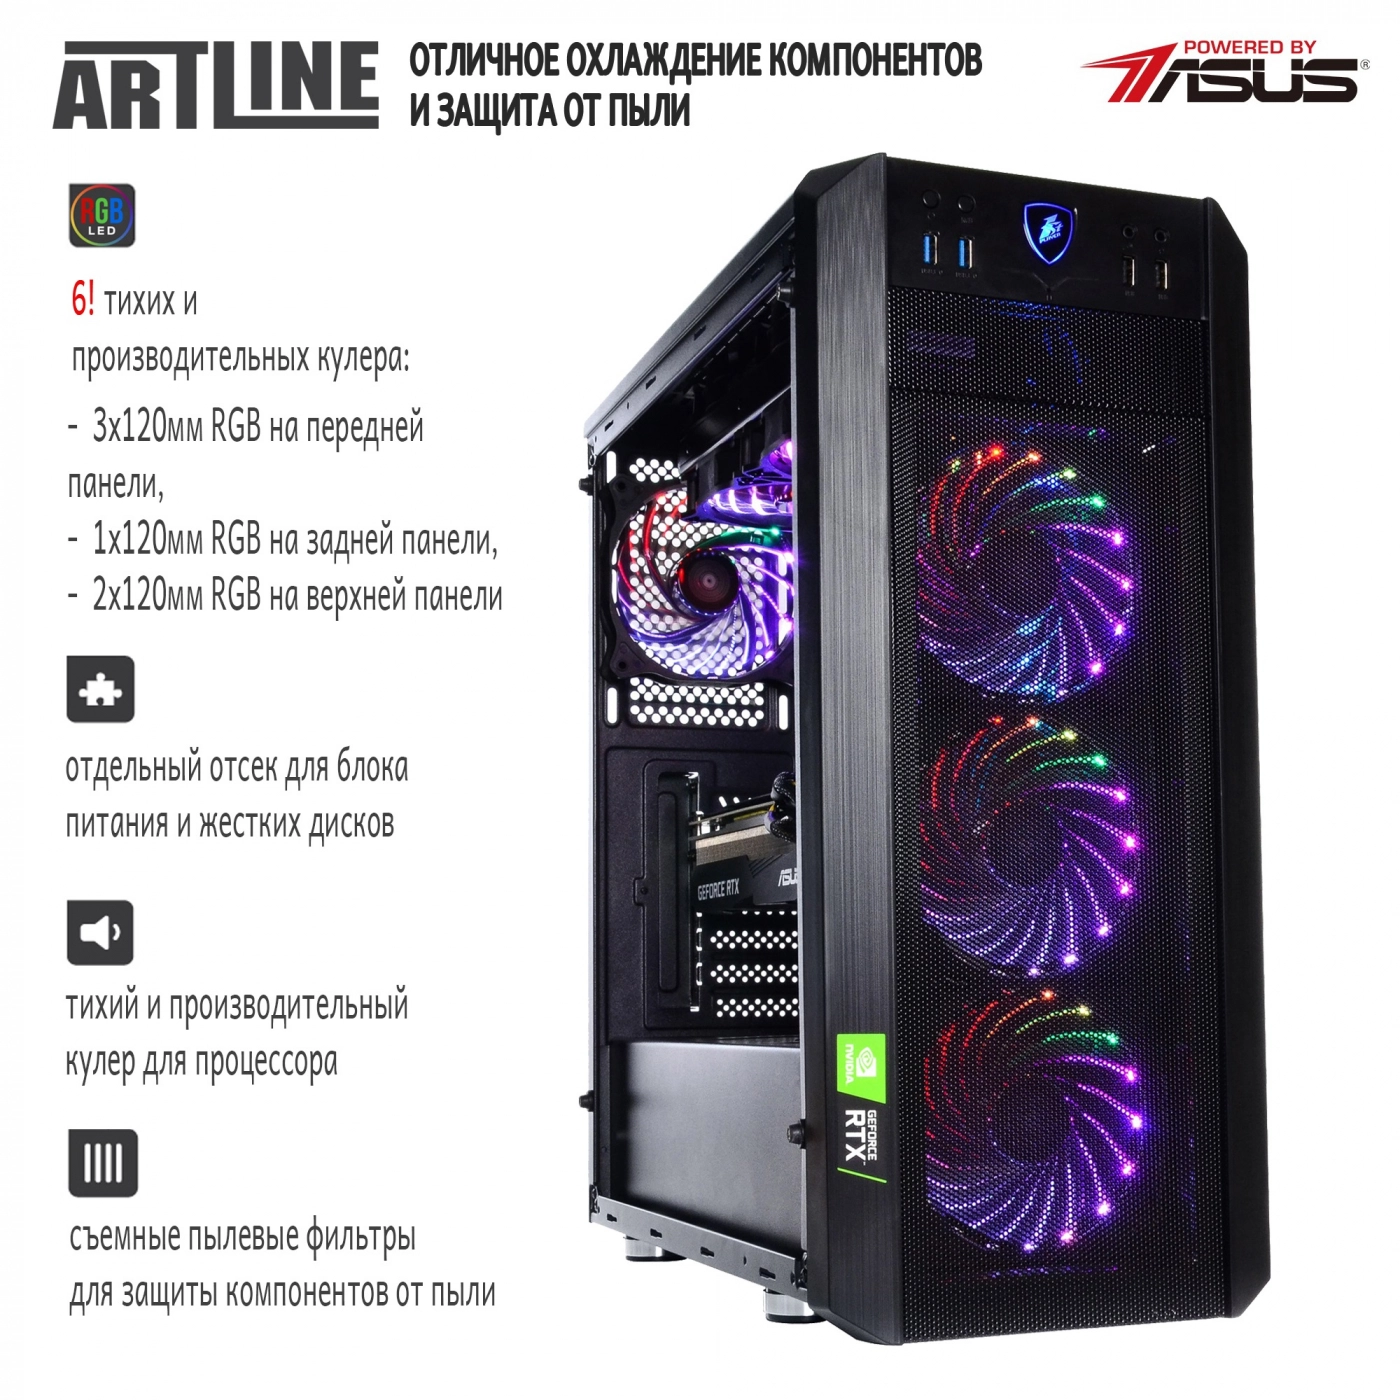 Купить Компьютер ARTLINE Gaming X94v16 - фото 2